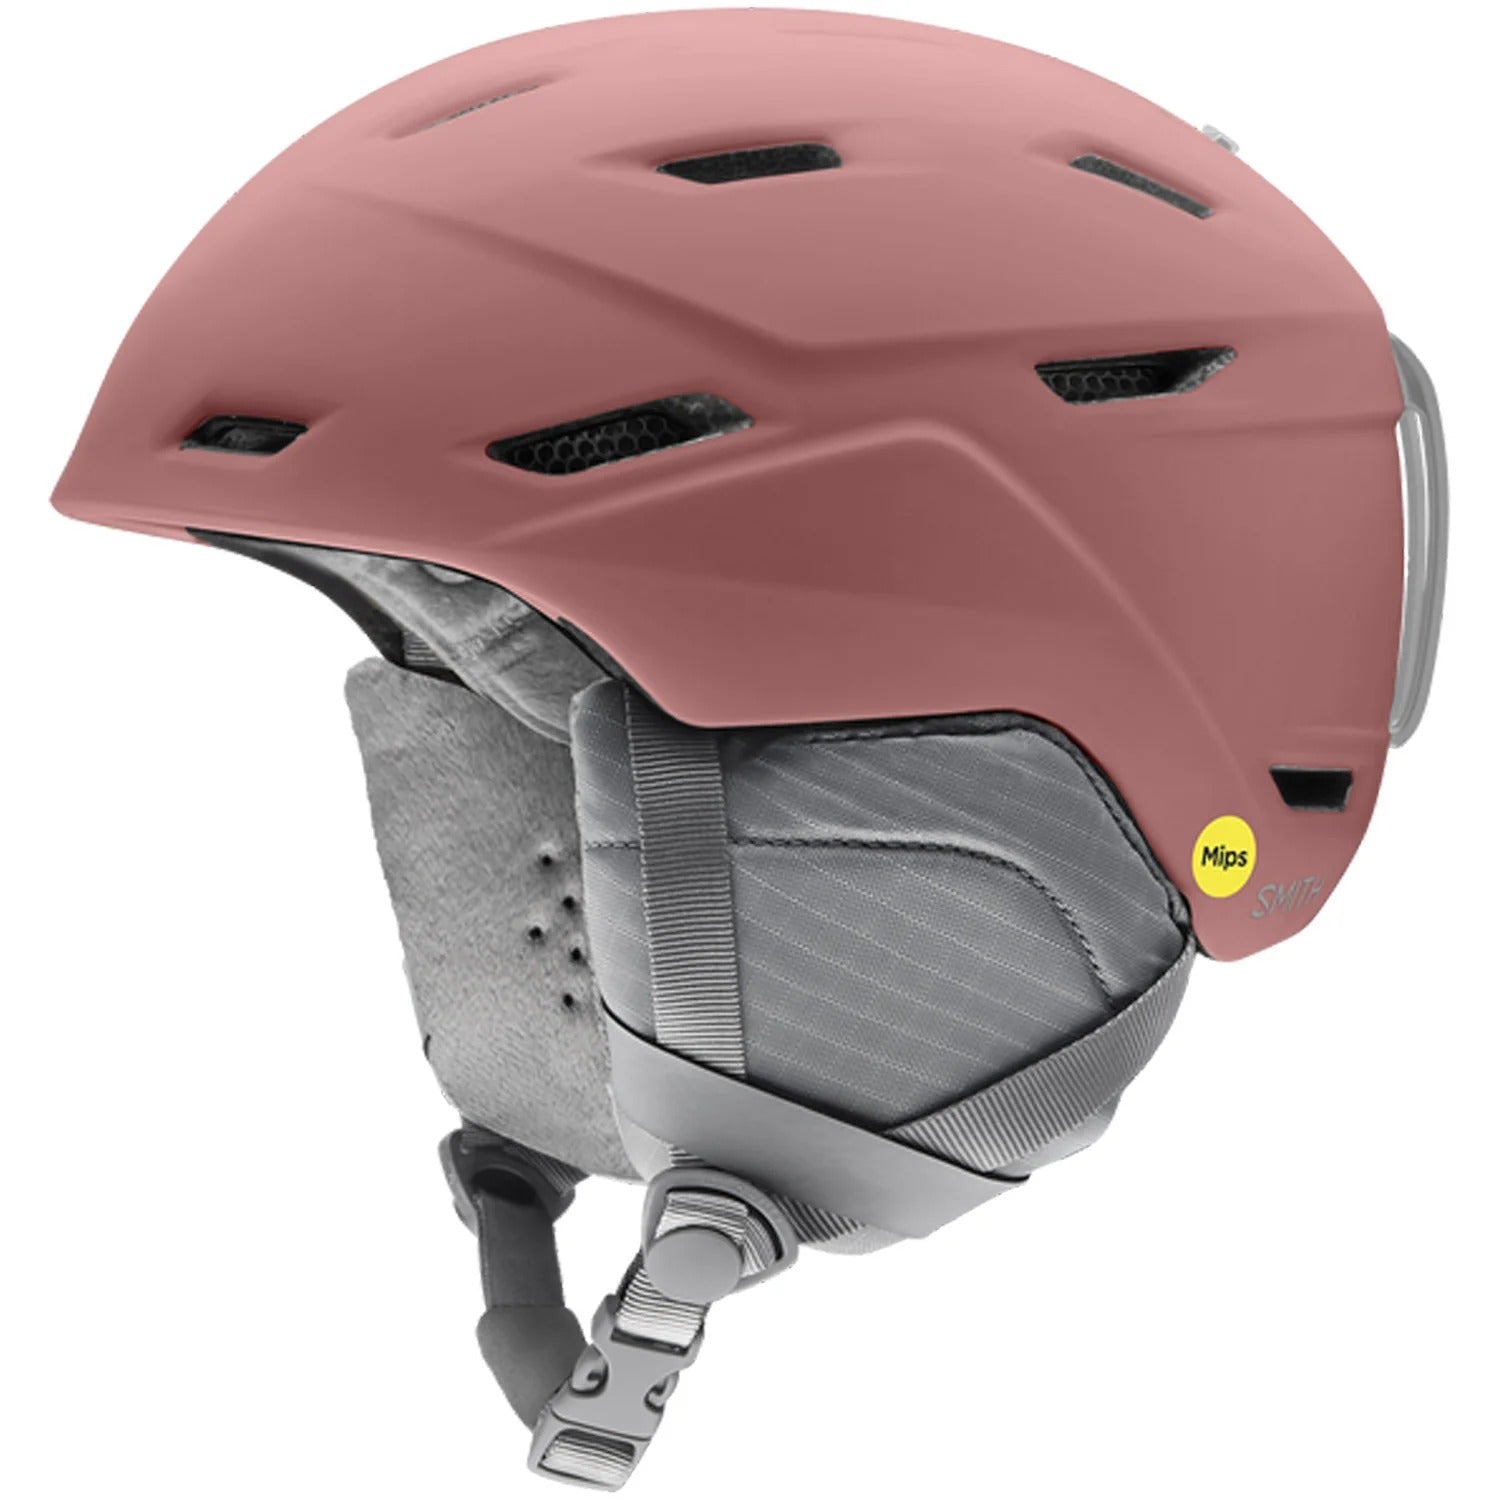 Mirage Mips Snow Helmet